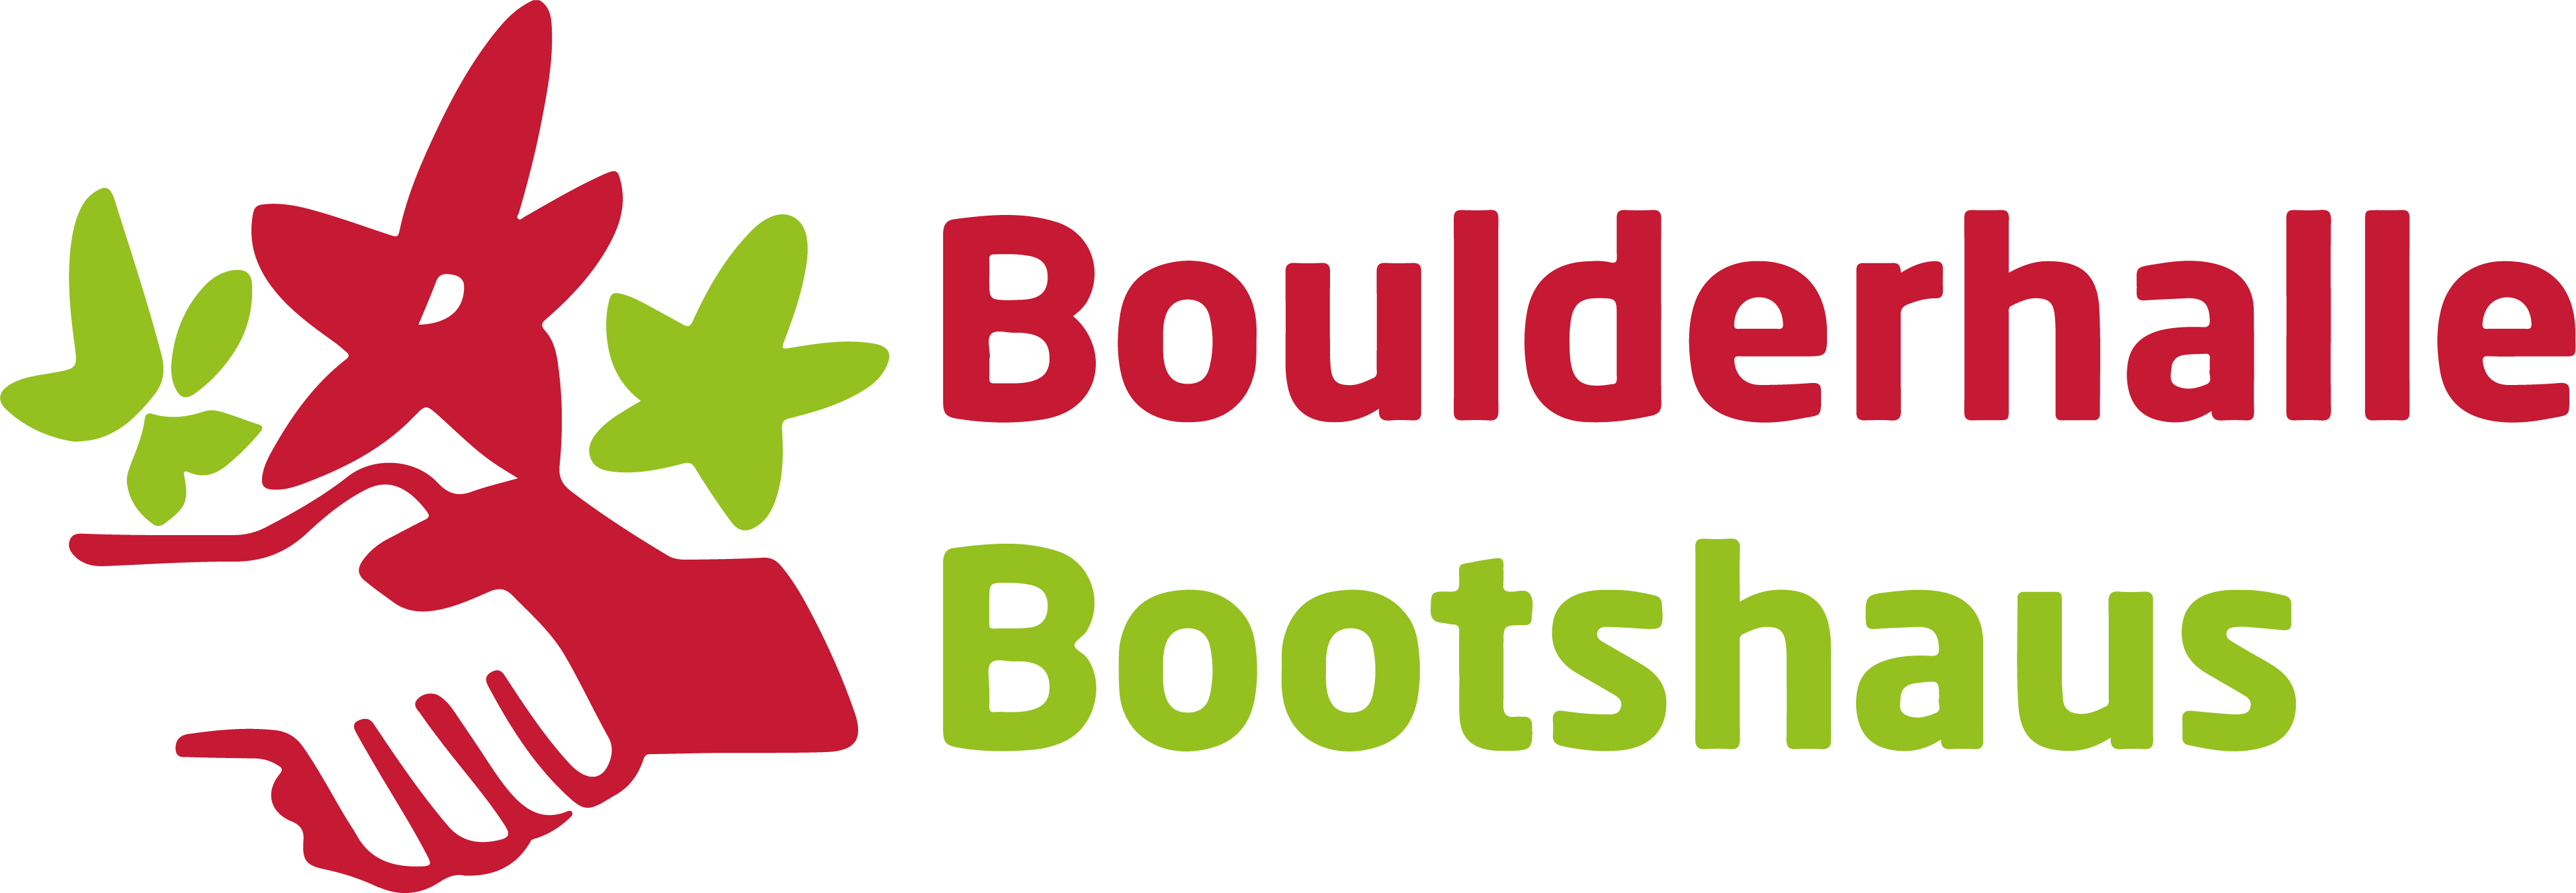 Boulderhalle Bootshaus